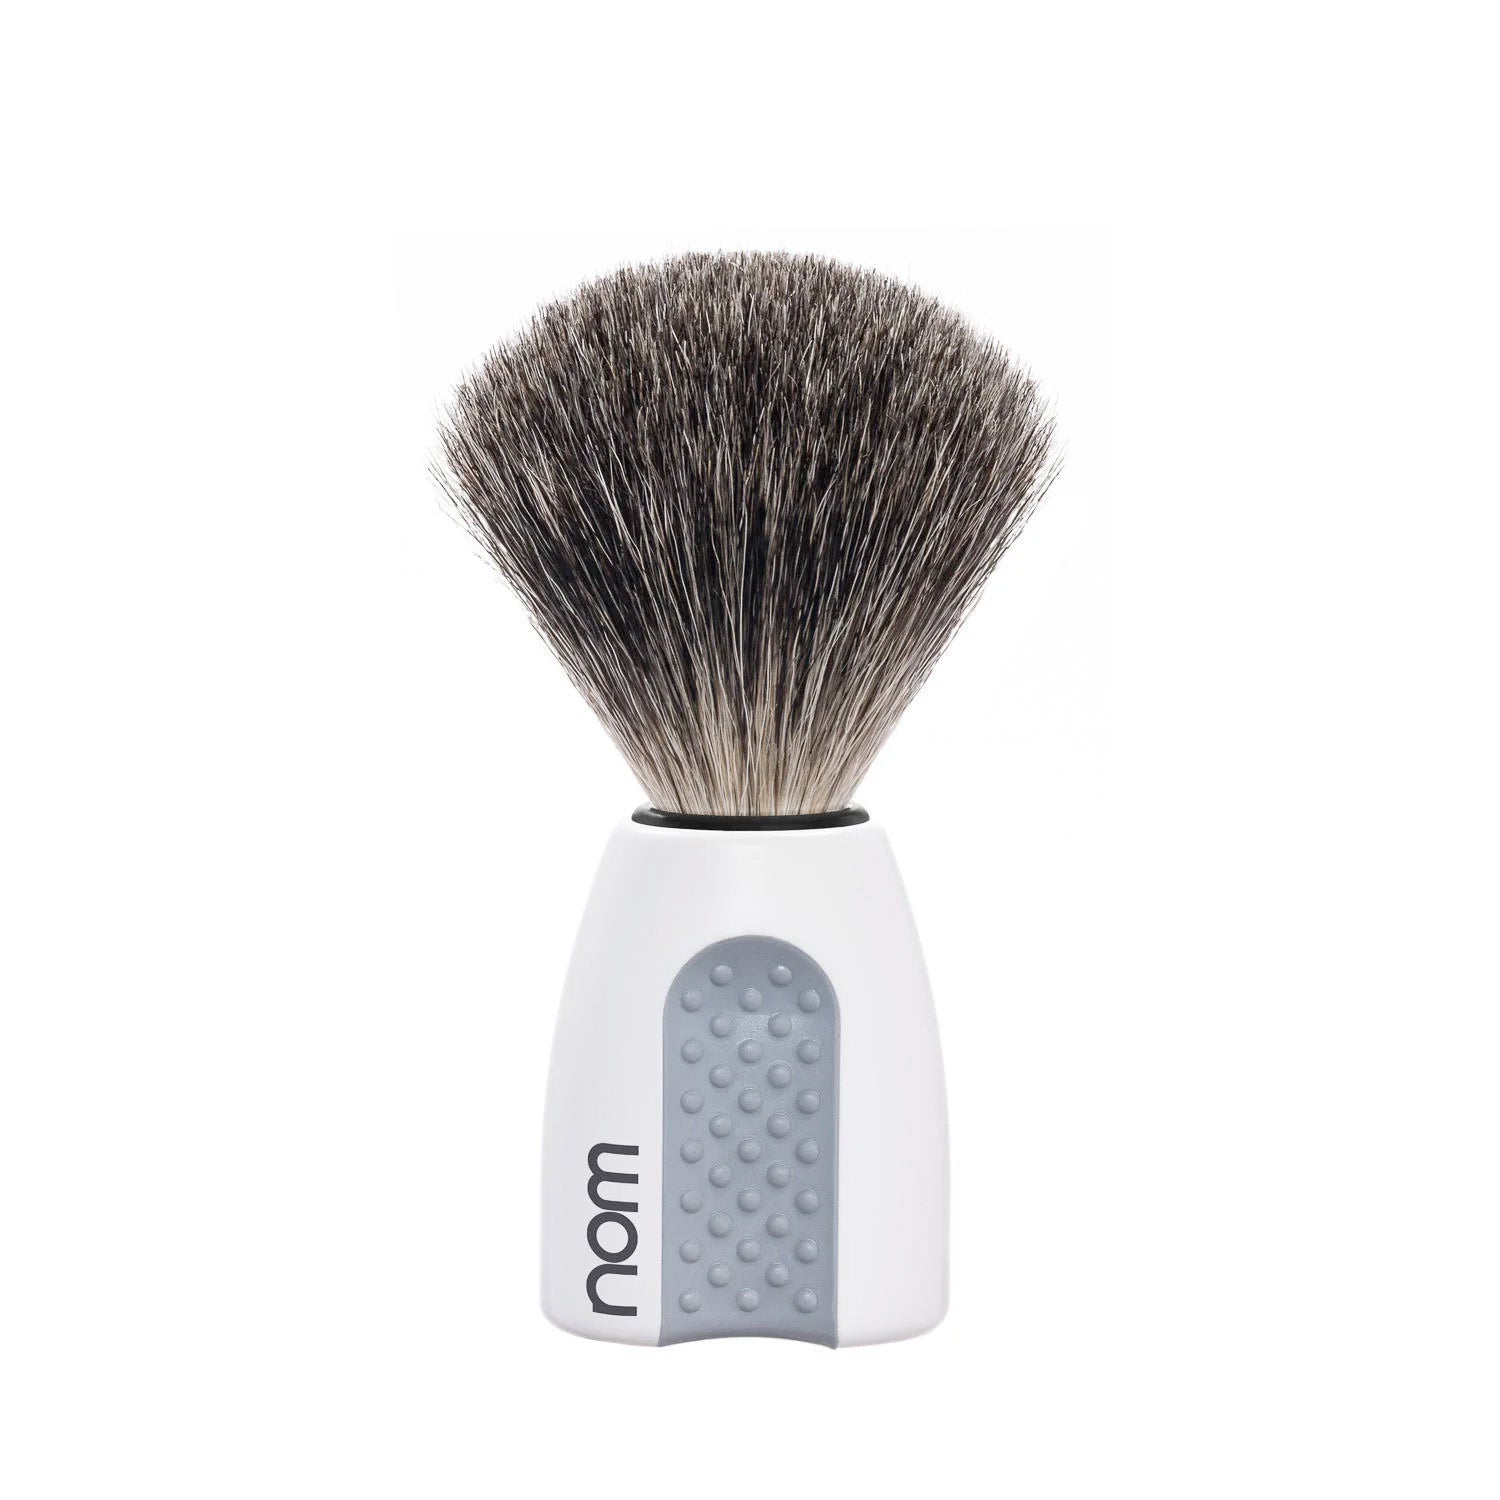 nom ERIK Badger Shaving Brush in White